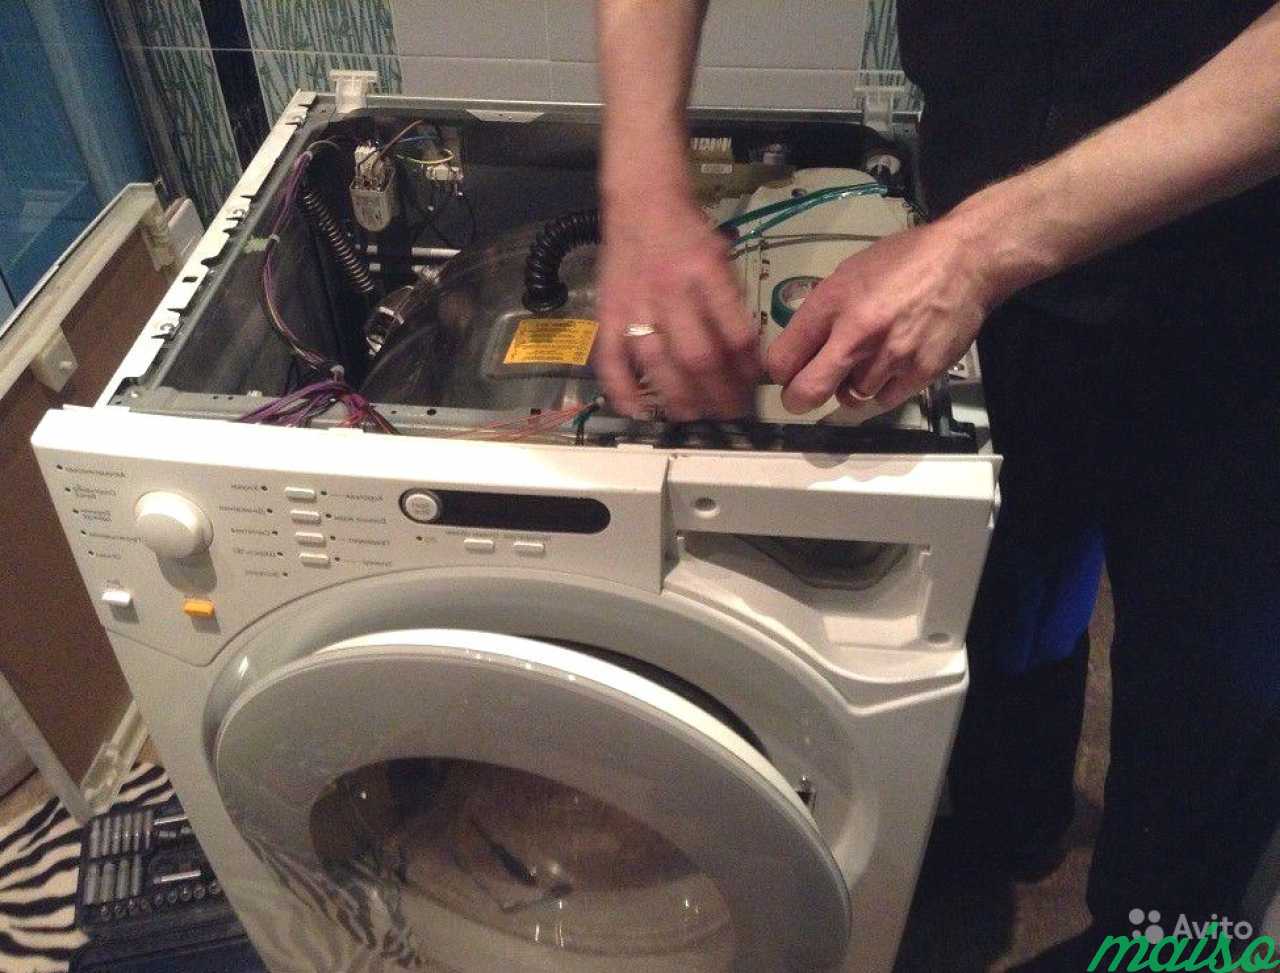 Ремонт стиральных машин в реутово. Ремонт стиральных машин. Мастер по ремонту стиральных машинок. Мастер по стиральным машинам. Сломалась стиральная машина.